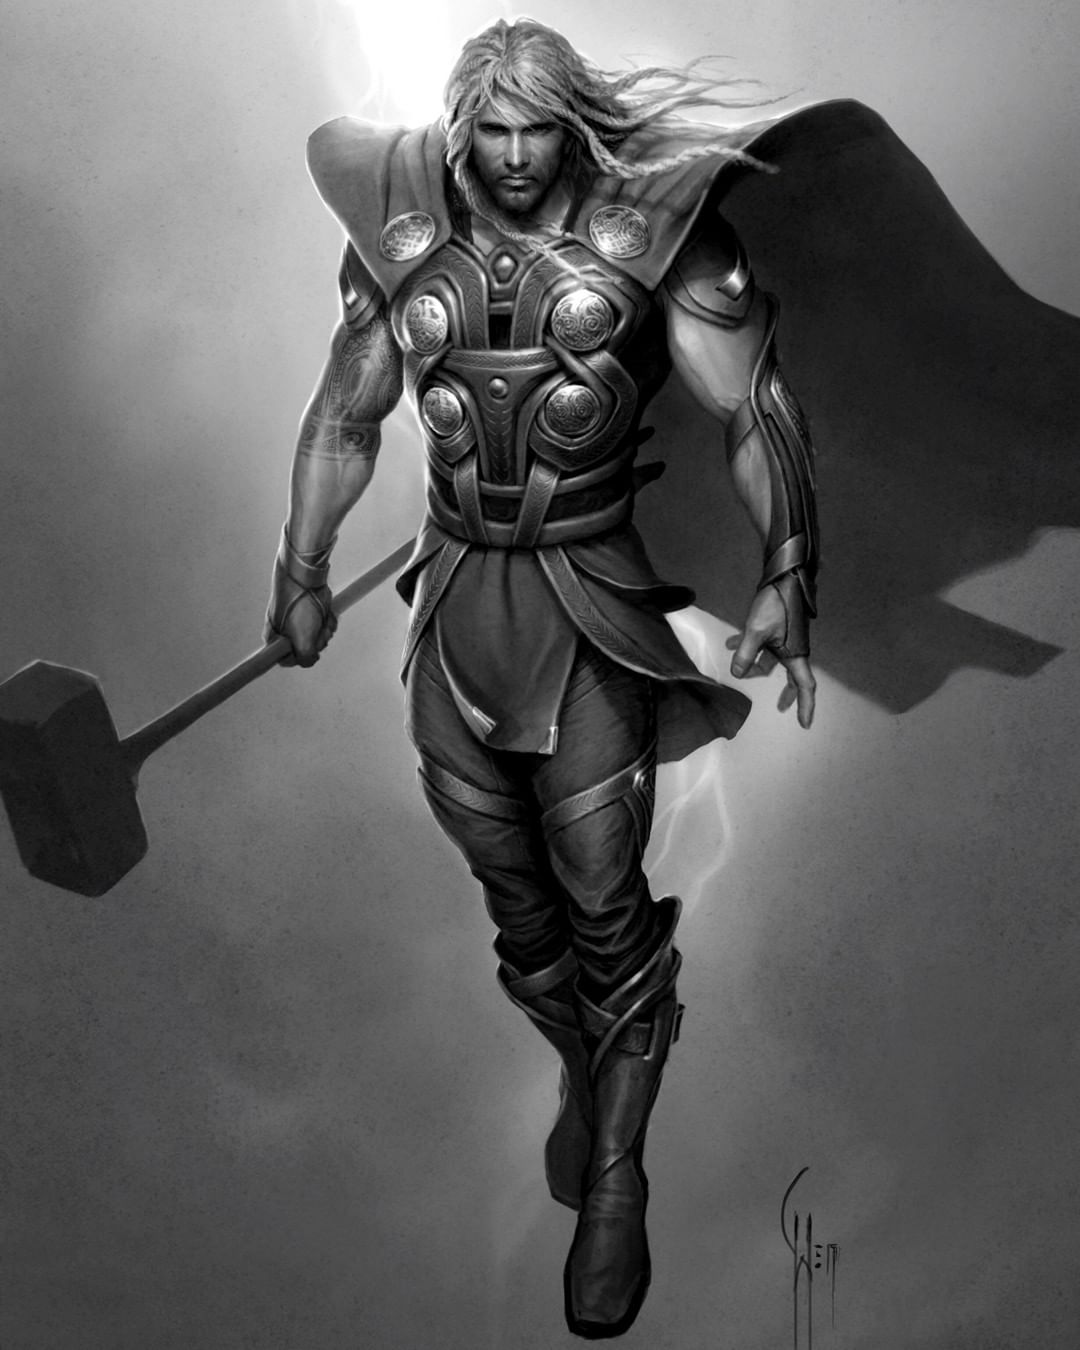 Thor: Ragnarok': Artes conceituais comparam a altura dos